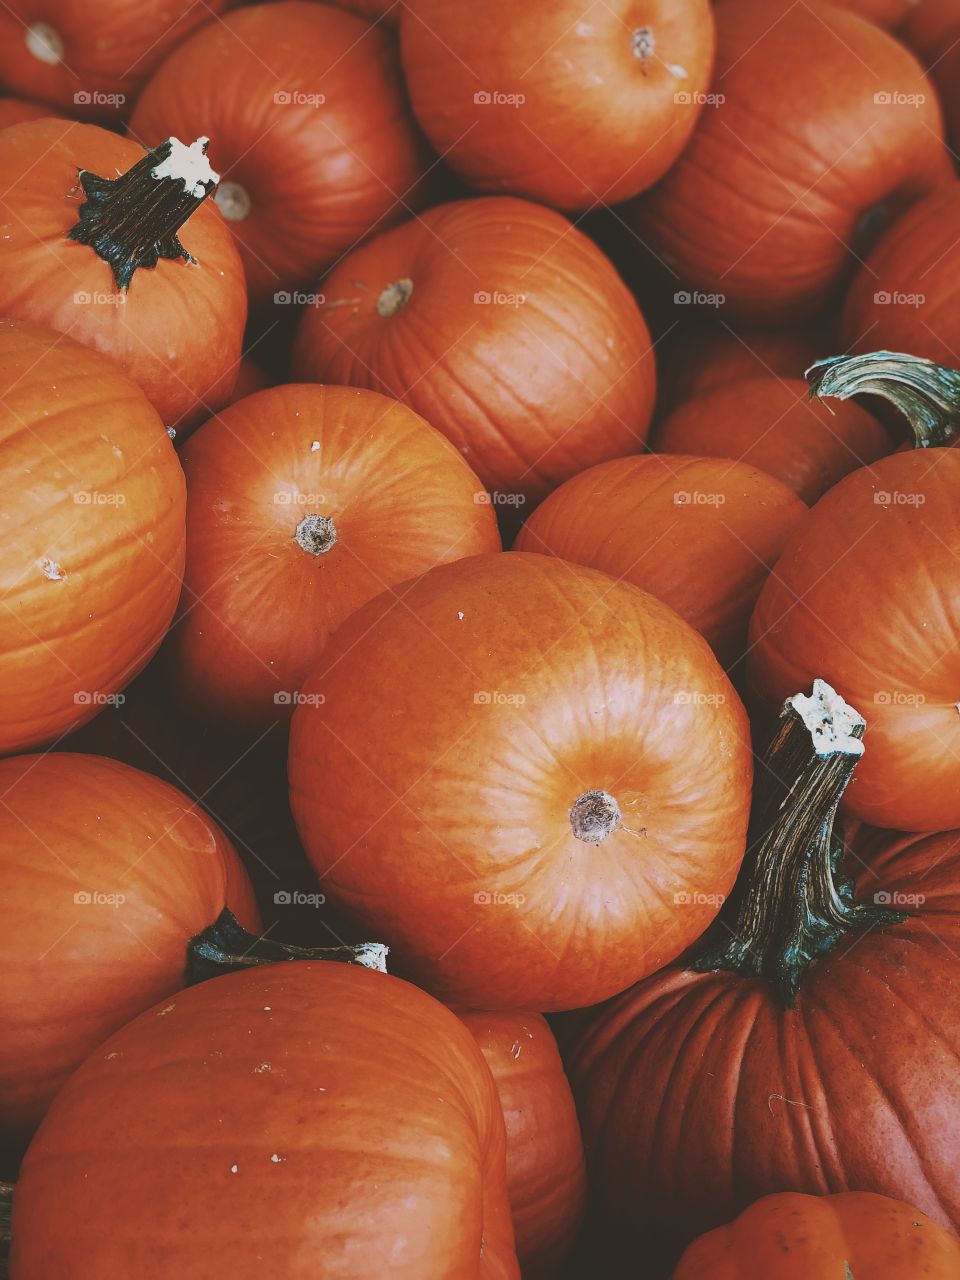 Pumpkins Piled Up, Pumpkin Patch, Pumpkins In The Autumn, Halloween Celebration With Pumpkins, Pick A Pumpkin, Jack-O-Lantern, Finding A Pumpkin, In The Pumpkin Patch, Fresh Farm Pumpkins 